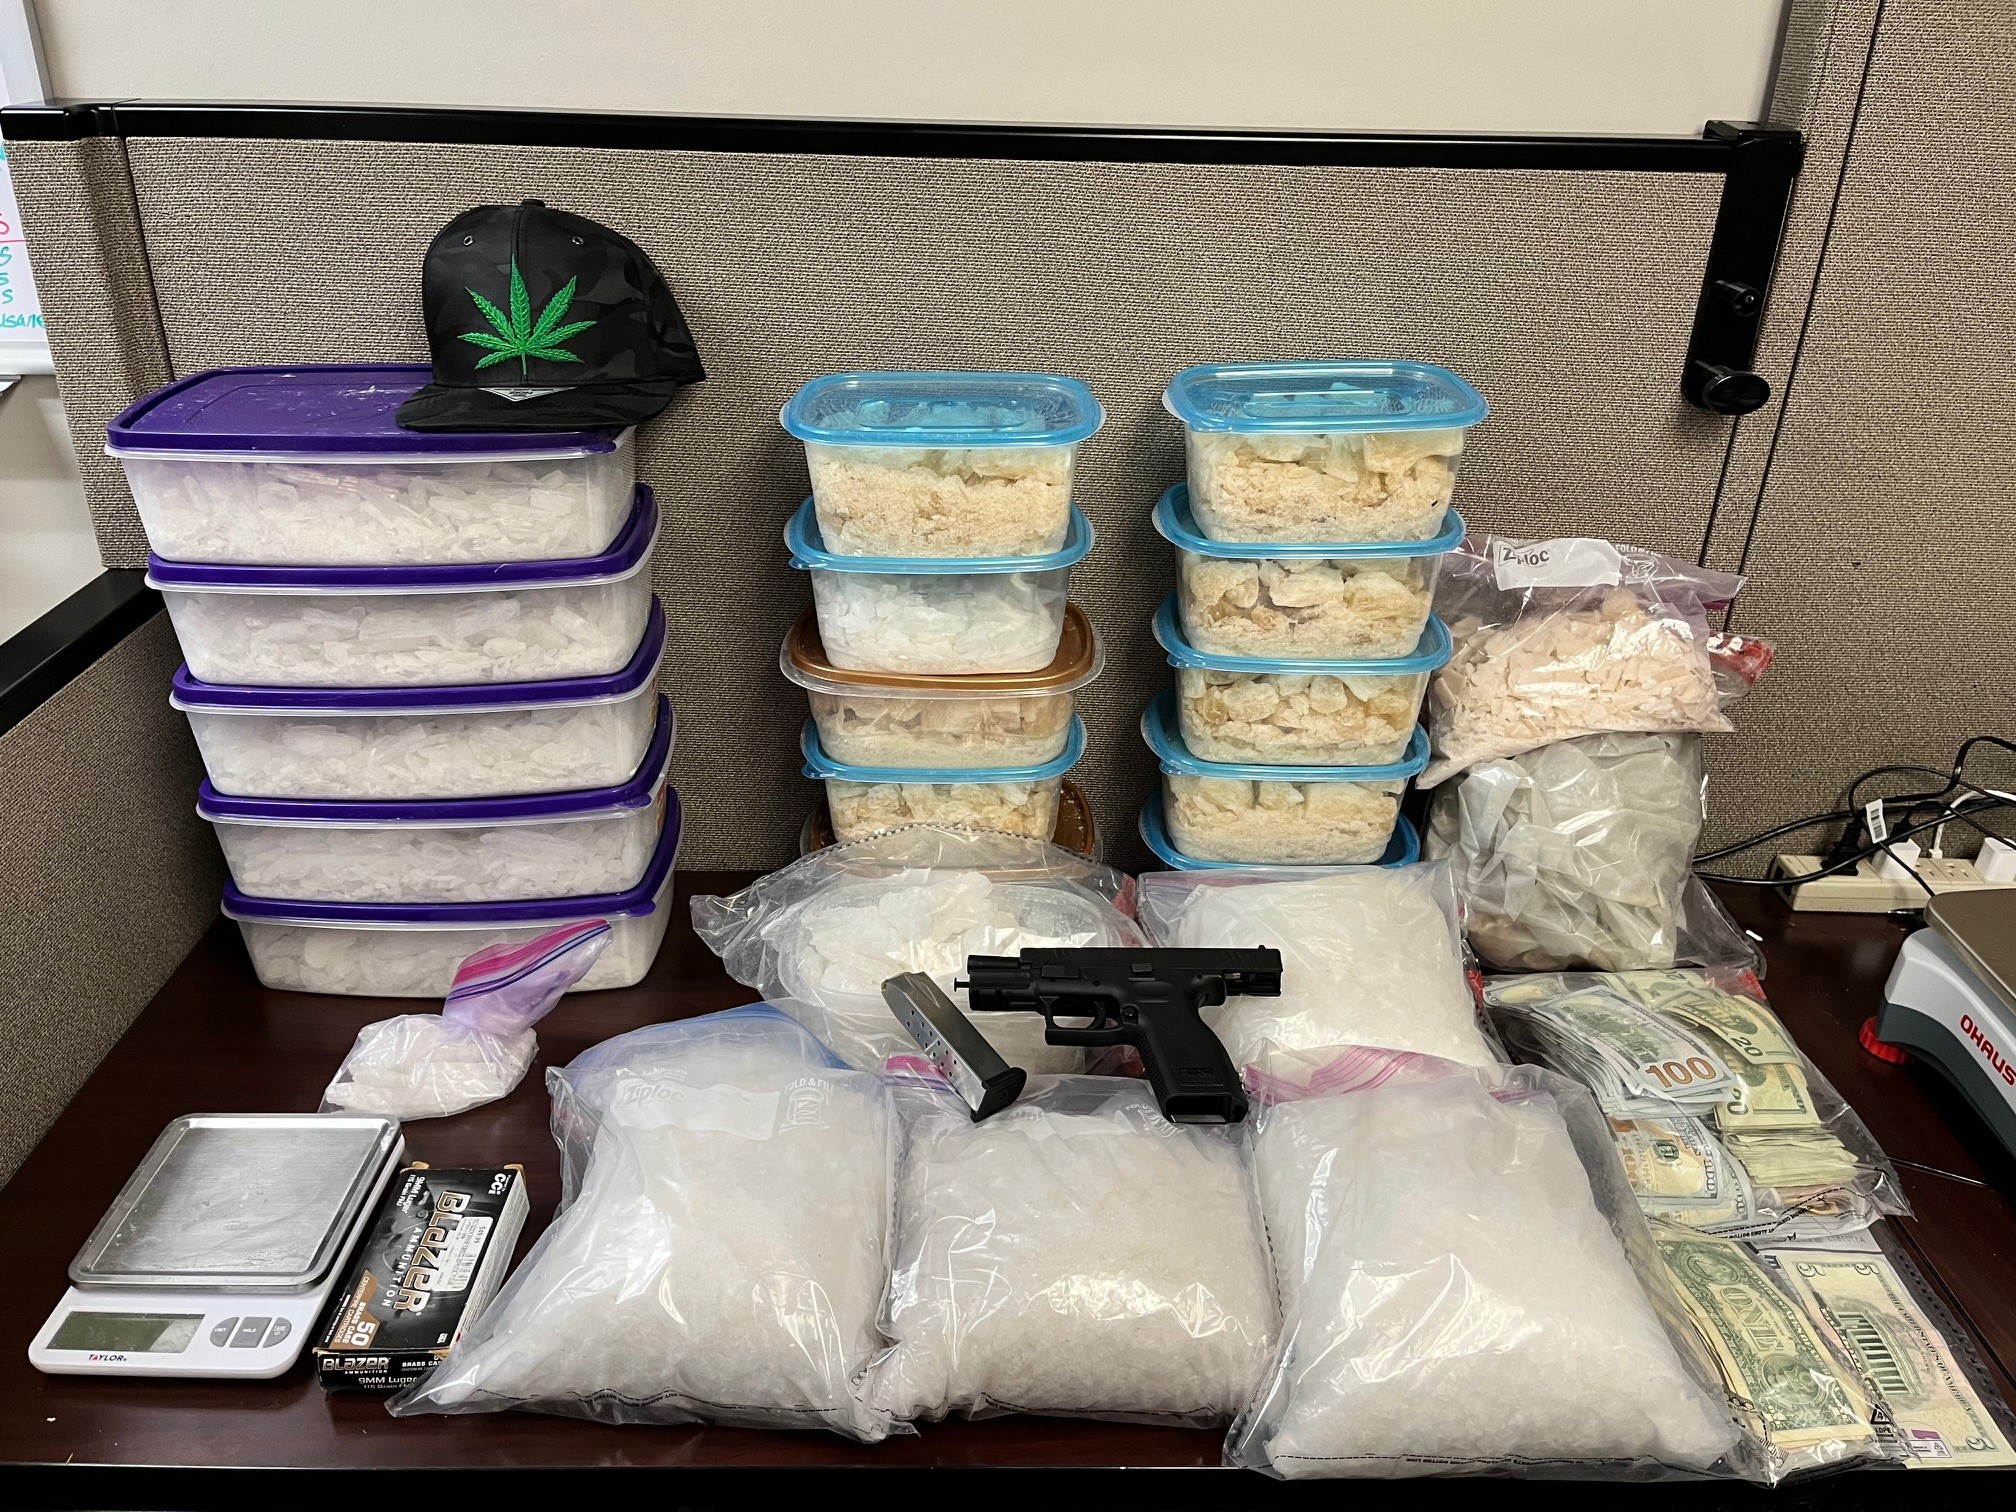 6 arrested after drug bust turns up $340k worth of methamphetamine